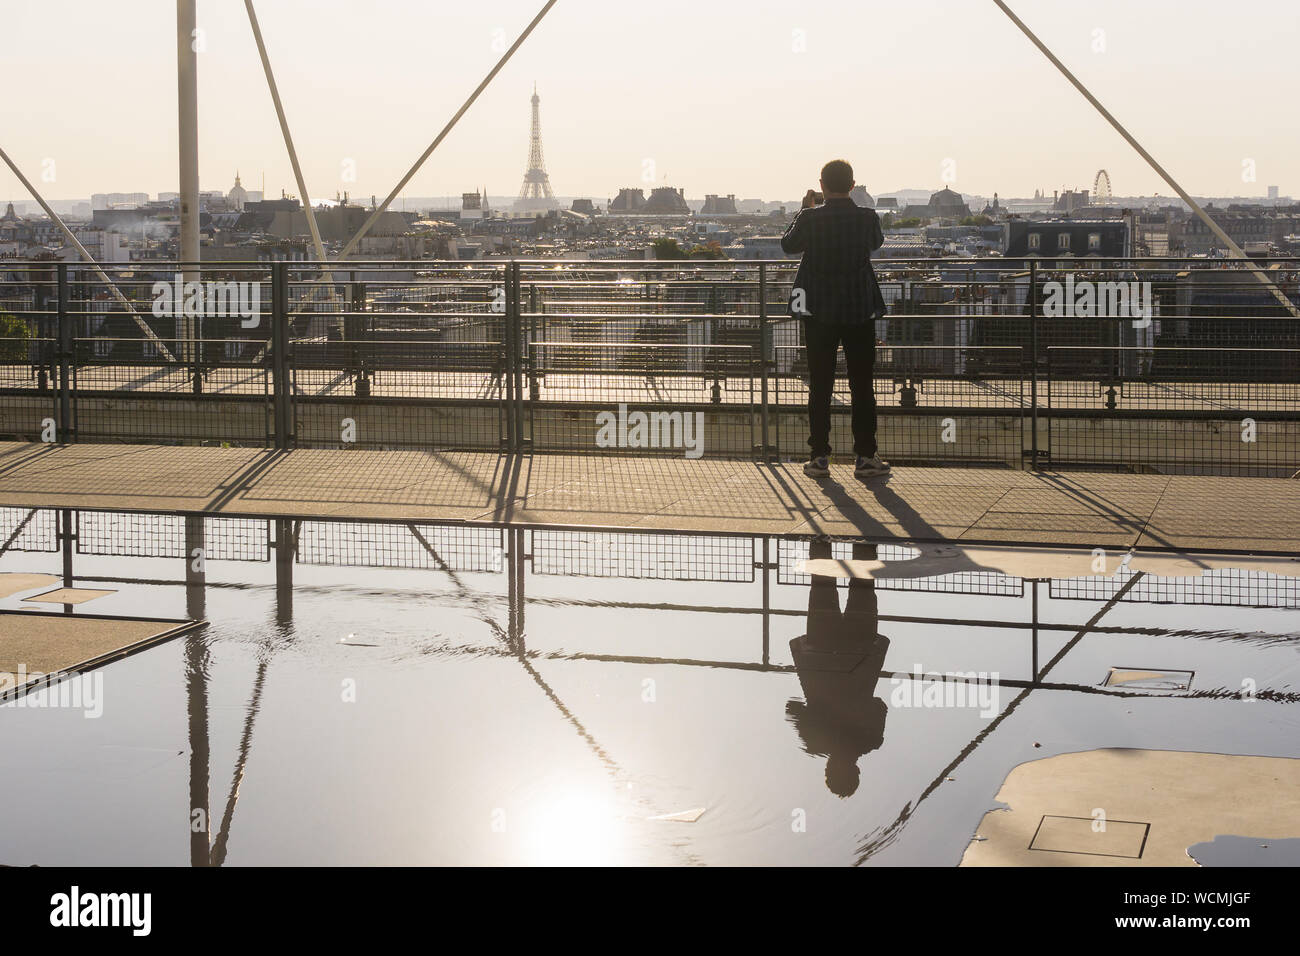 Paris Centre Pompidou - Tourist photographing les toits de Paris à partir de la plate-forme d'observation du Centre Pompidou. La France, l'Europe. Banque D'Images